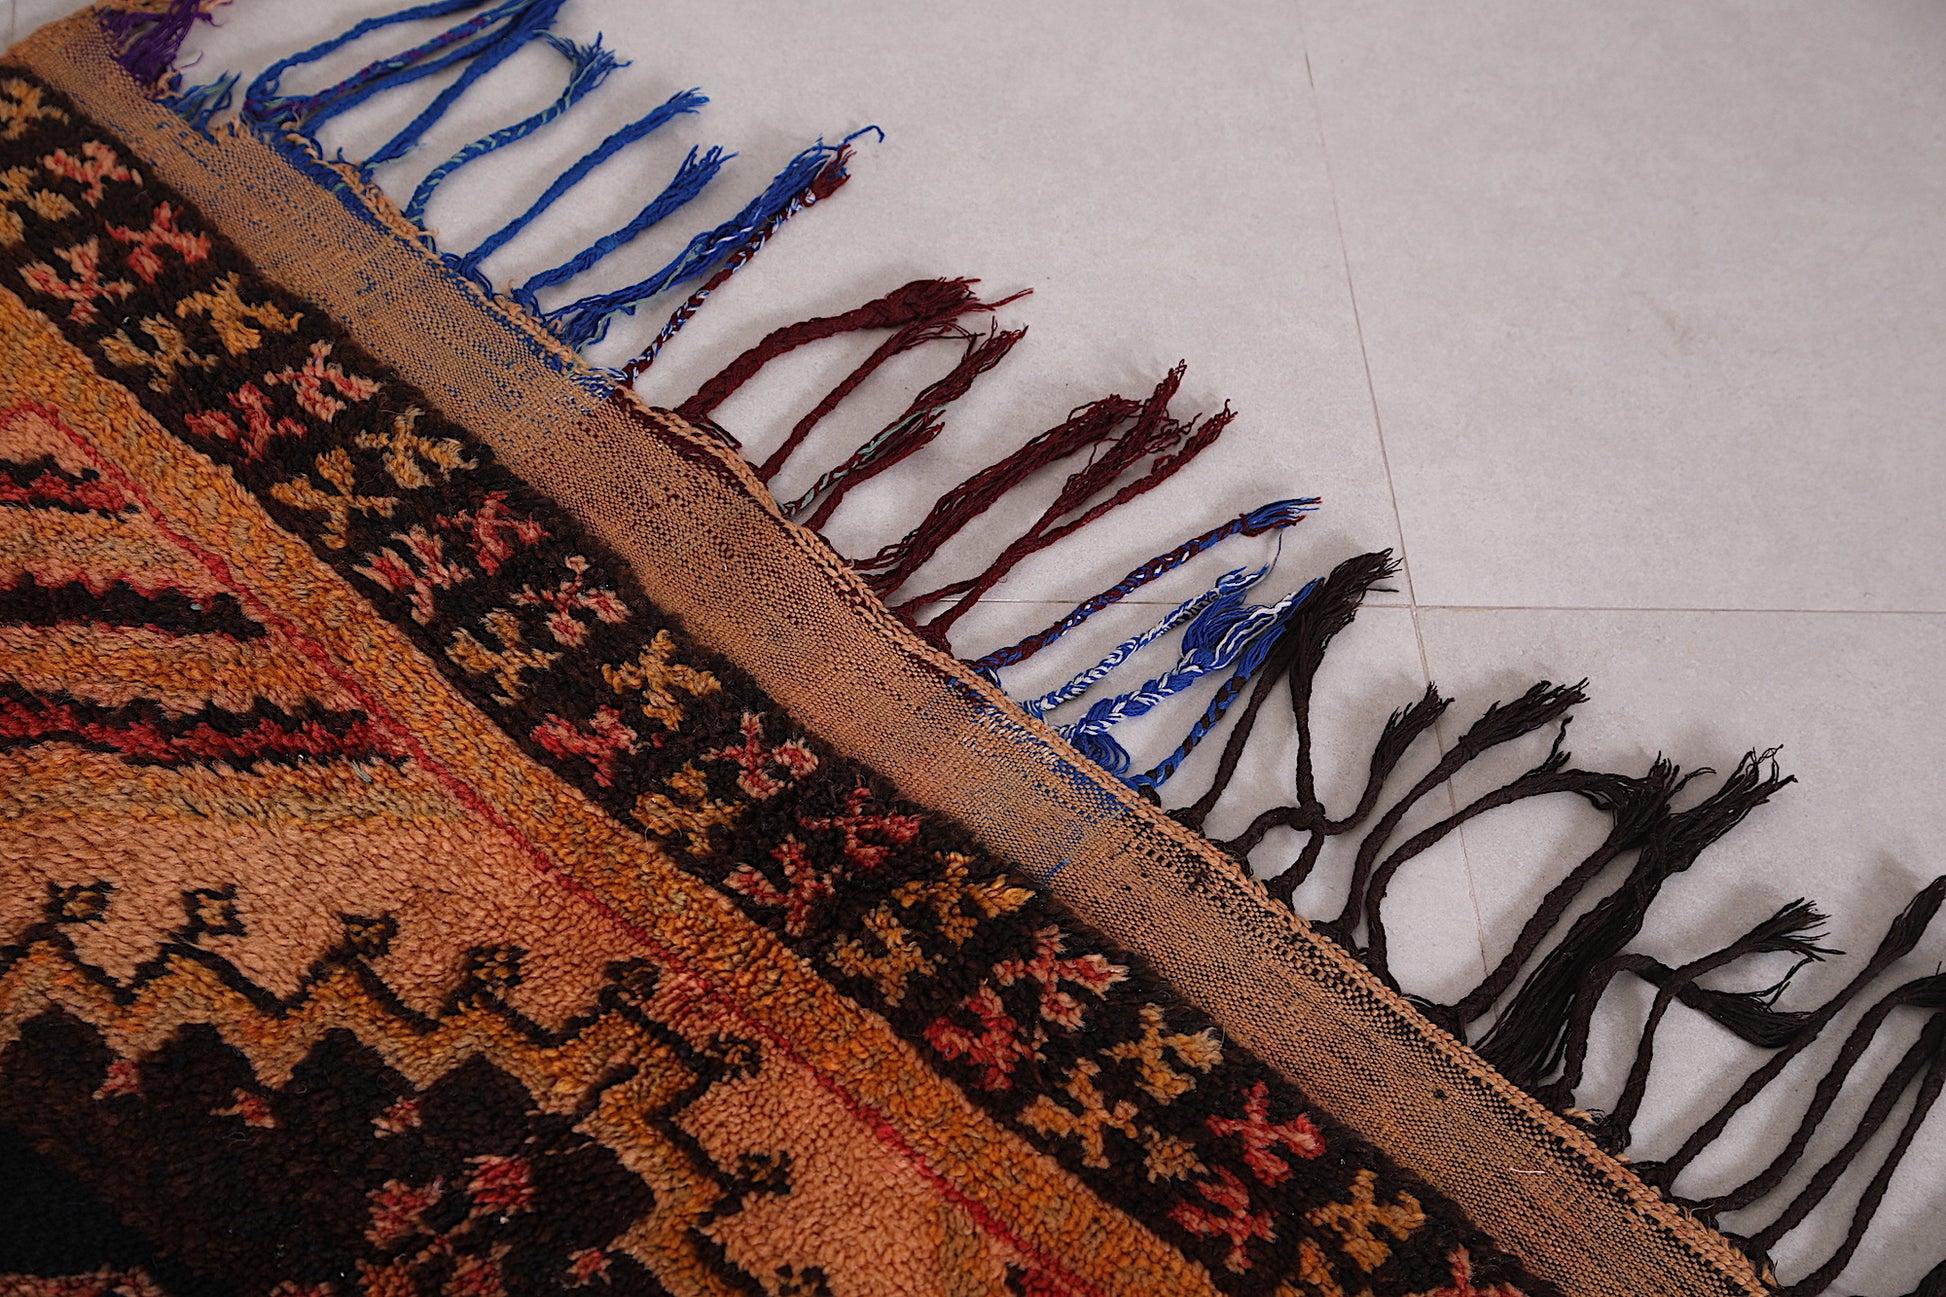 Old Moroccan rug 3.7 X 7.8 Feet